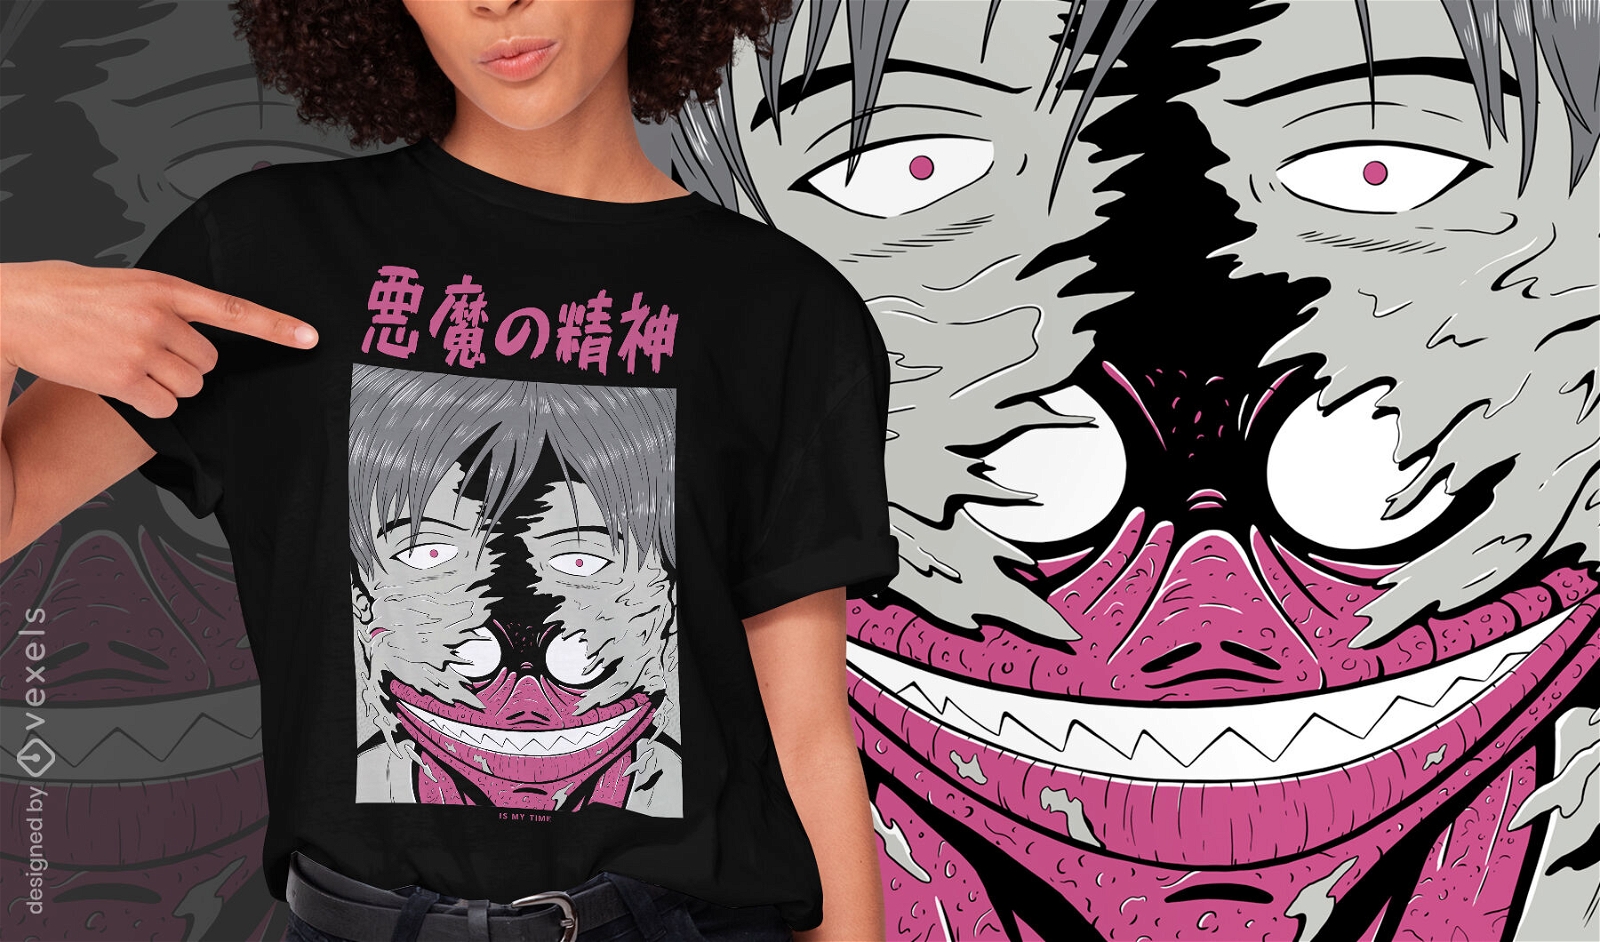 Camiseta de anime oscuro de criatura espíritu demoníaco psd